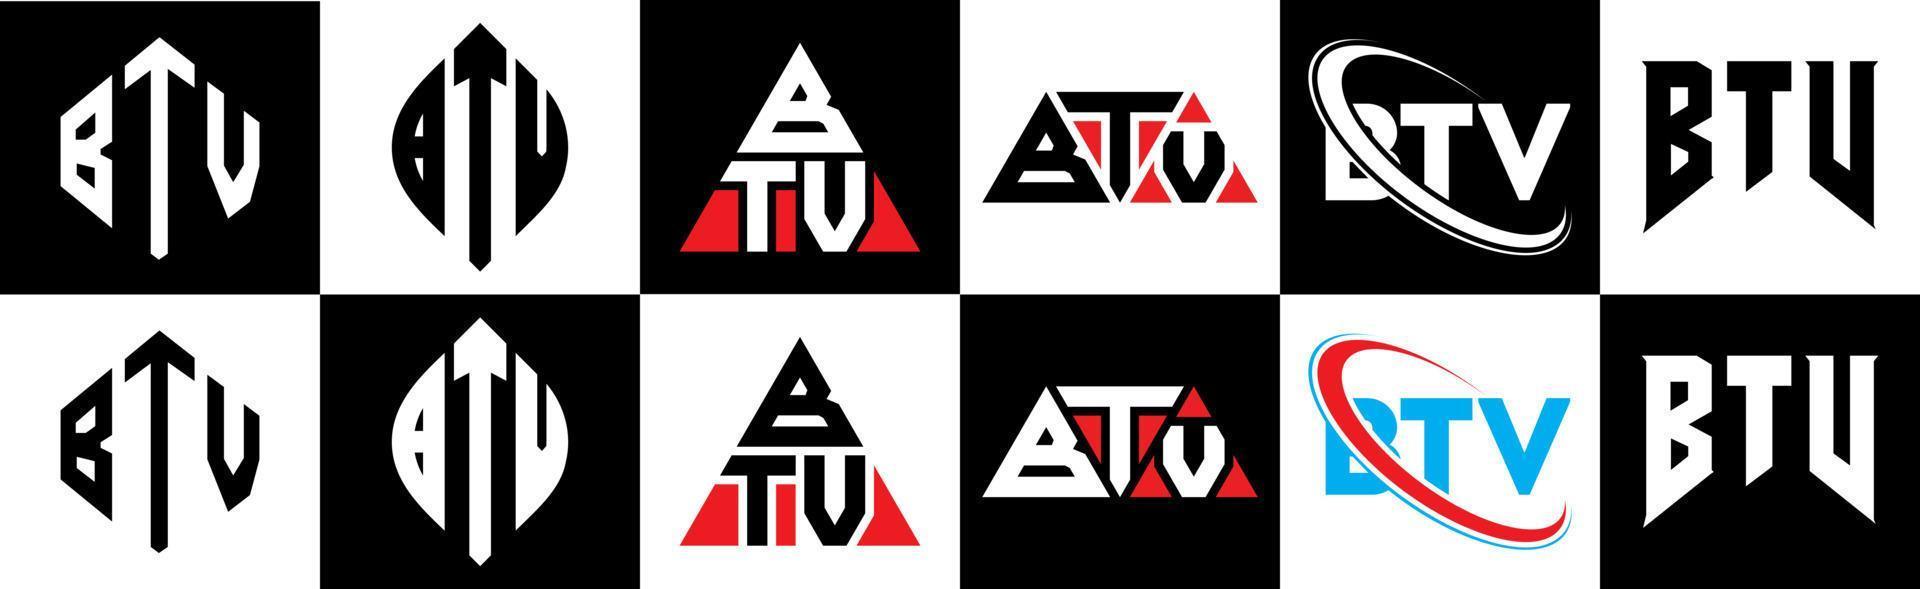 btv-Buchstaben-Logo-Design in sechs Stilen. btv polygon, kreis, dreieck, sechseck, flacher und einfacher stil mit schwarz-weißem buchstabenlogo in einer zeichenfläche. BTV minimalistisches und klassisches Logo vektor